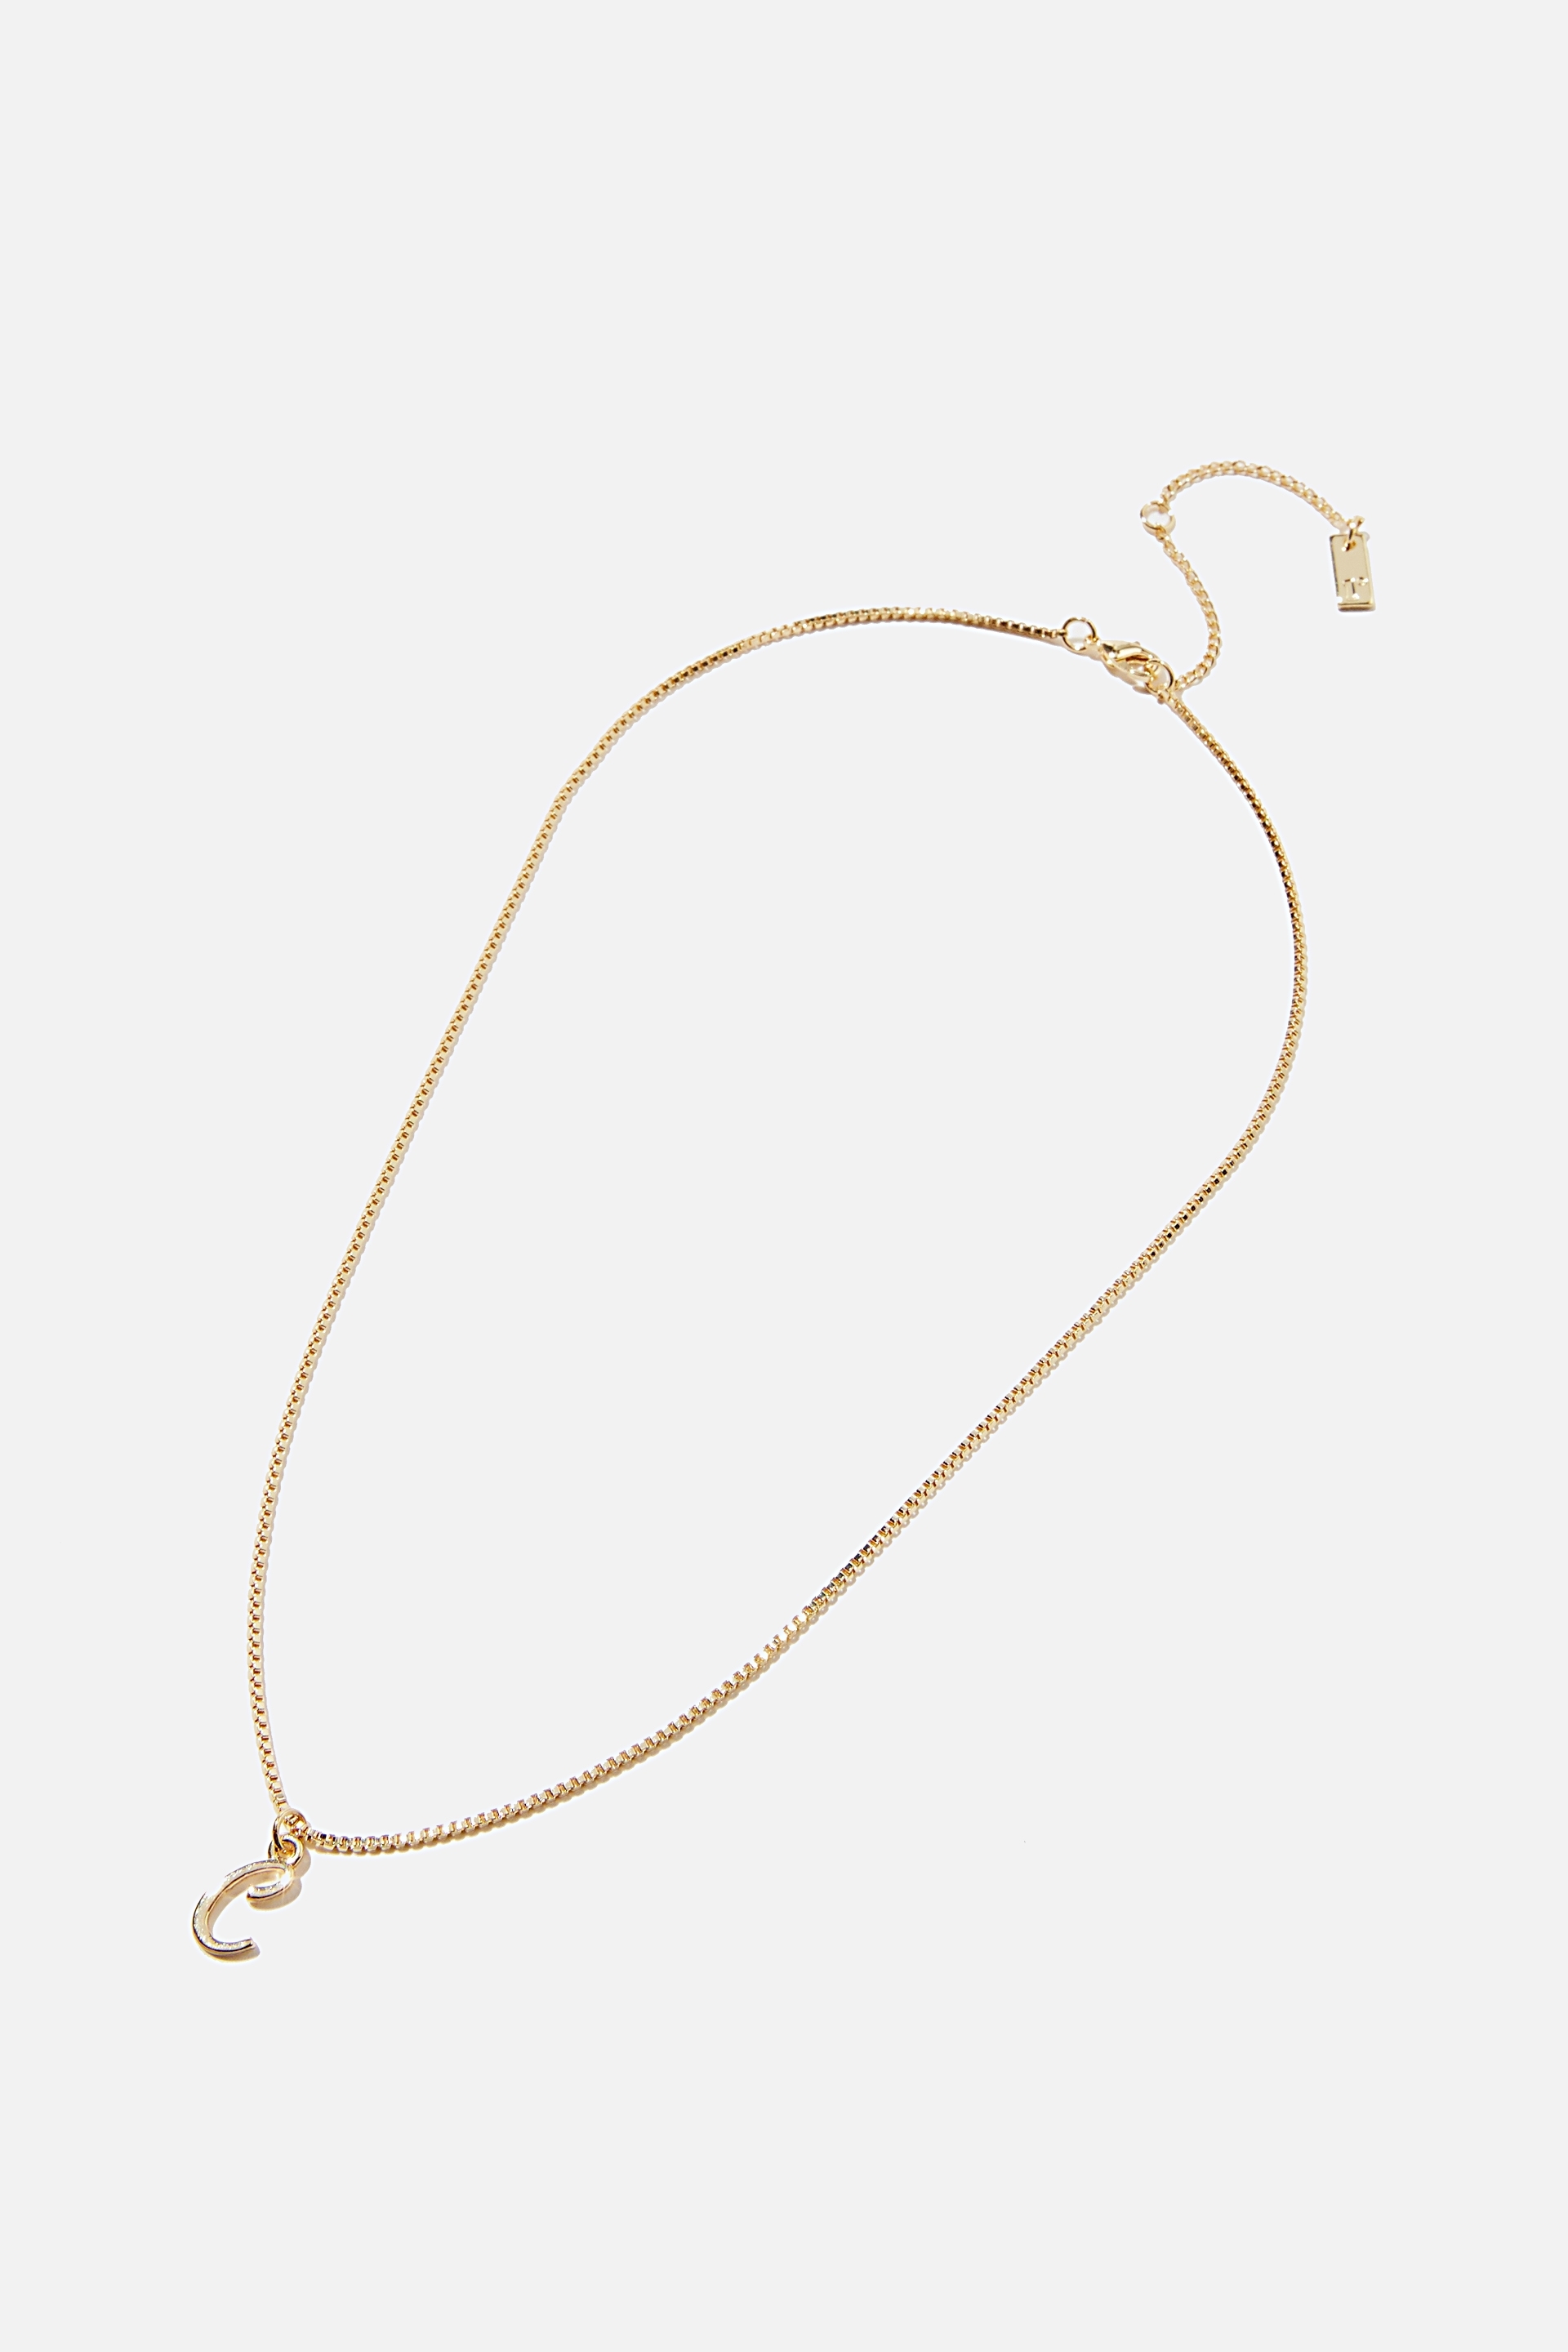 Rubi - Premium Pendant Necklace - Gold plated c